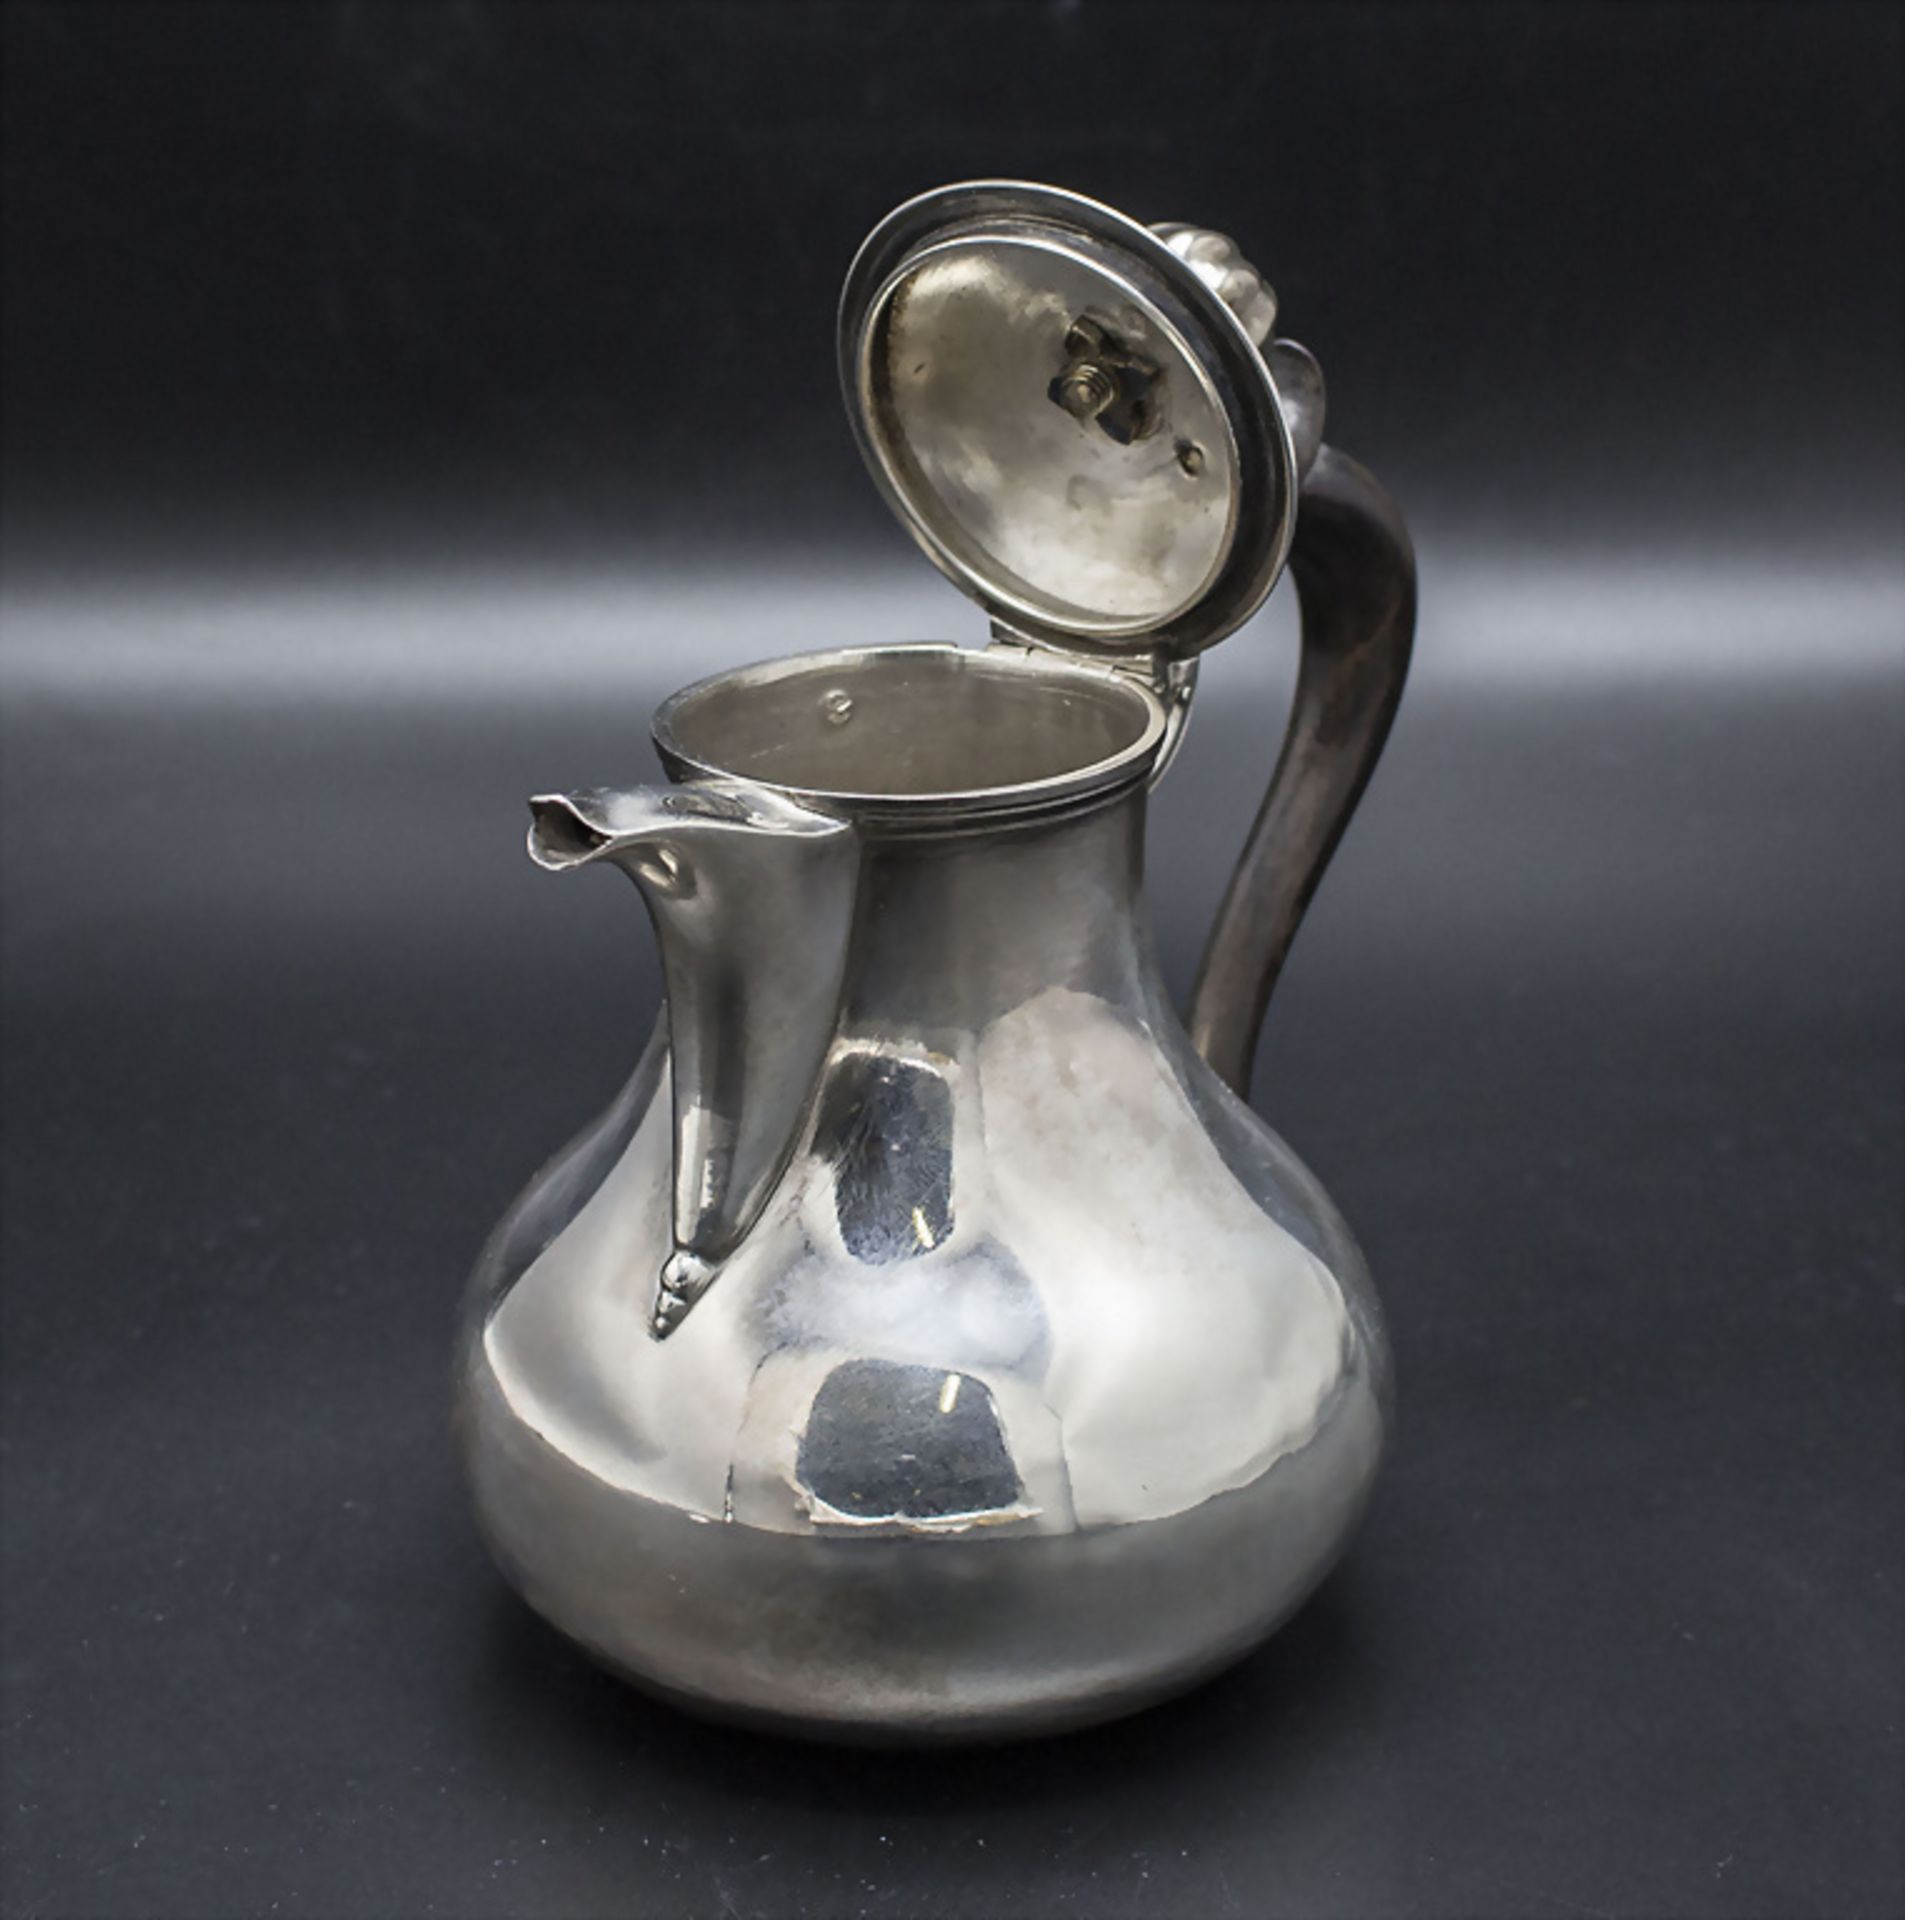 Silber Krug / A silver jug, Debain & Flament, Paris, 1874-1880 - Bild 3 aus 5